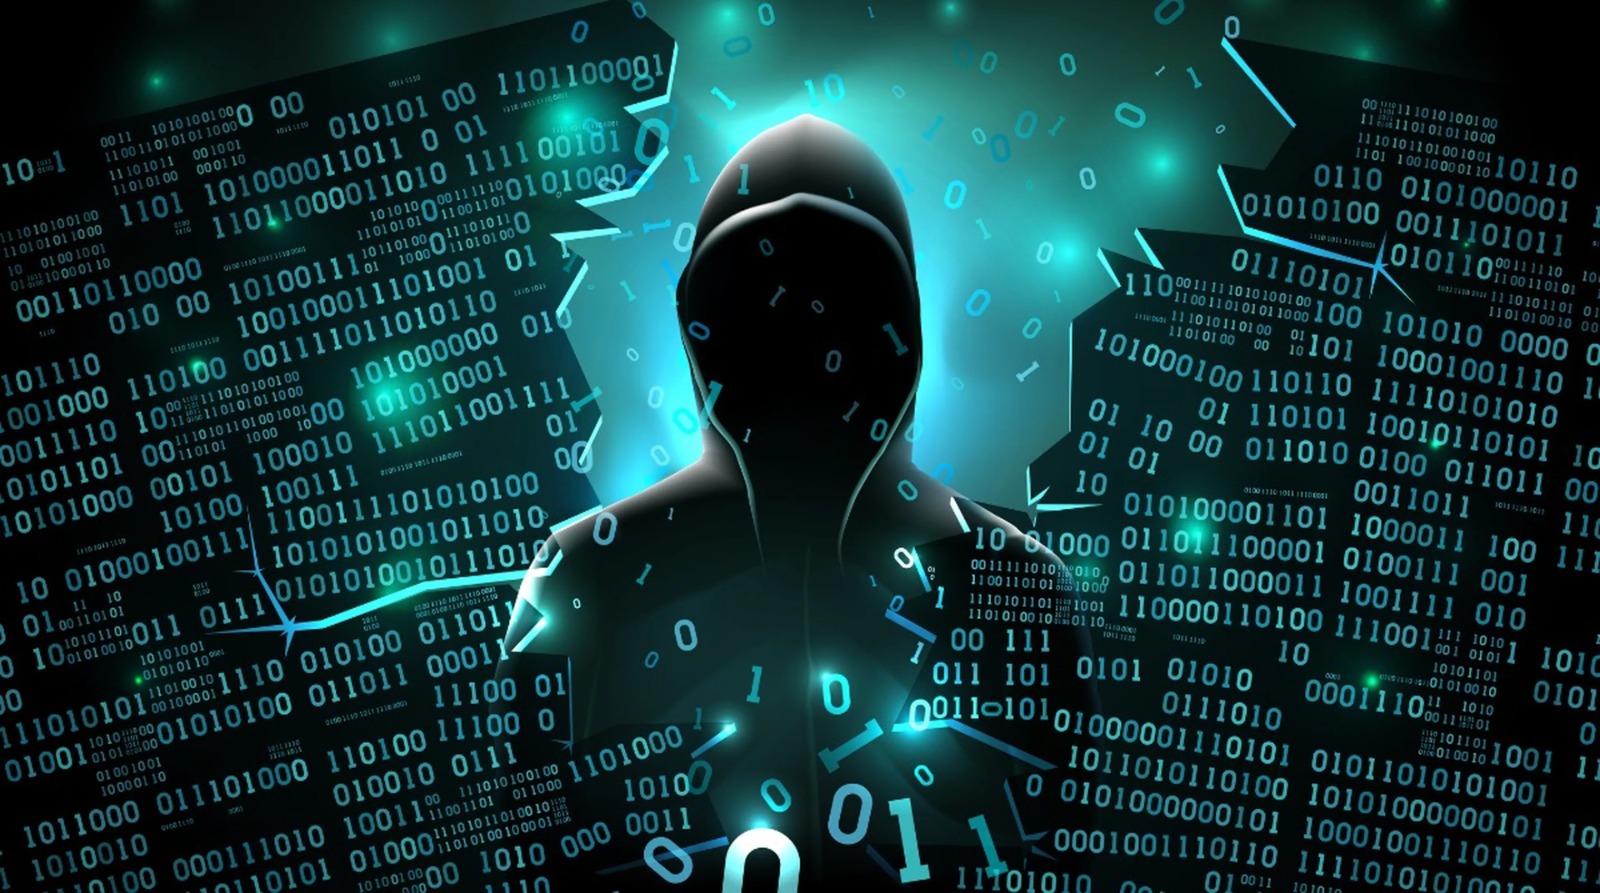 Ladrones cibernéticos usan IA para suplantar identidades y estafar a víctimas